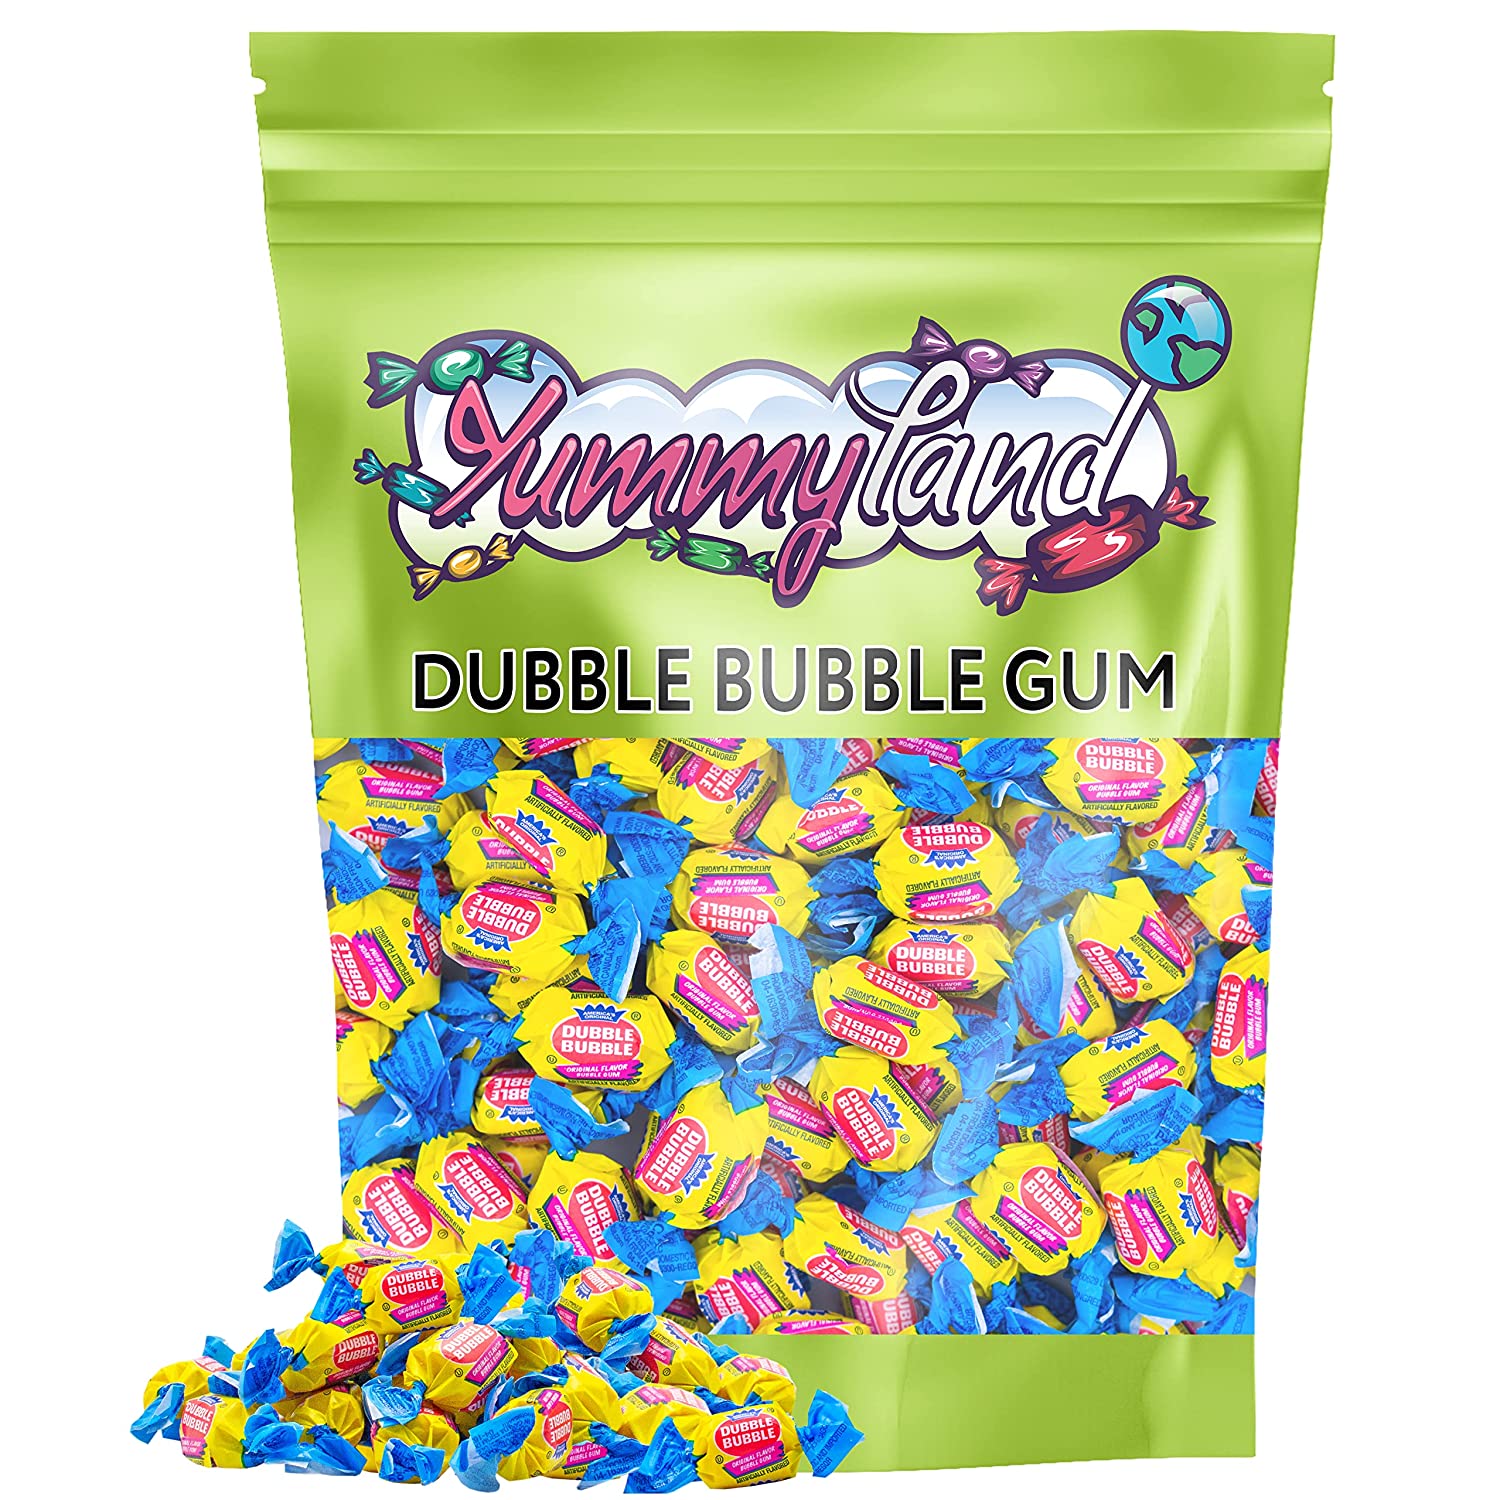 Dubble Bubble – Original Twist Wrapped Dubble Bubble Gum - 2 lbs